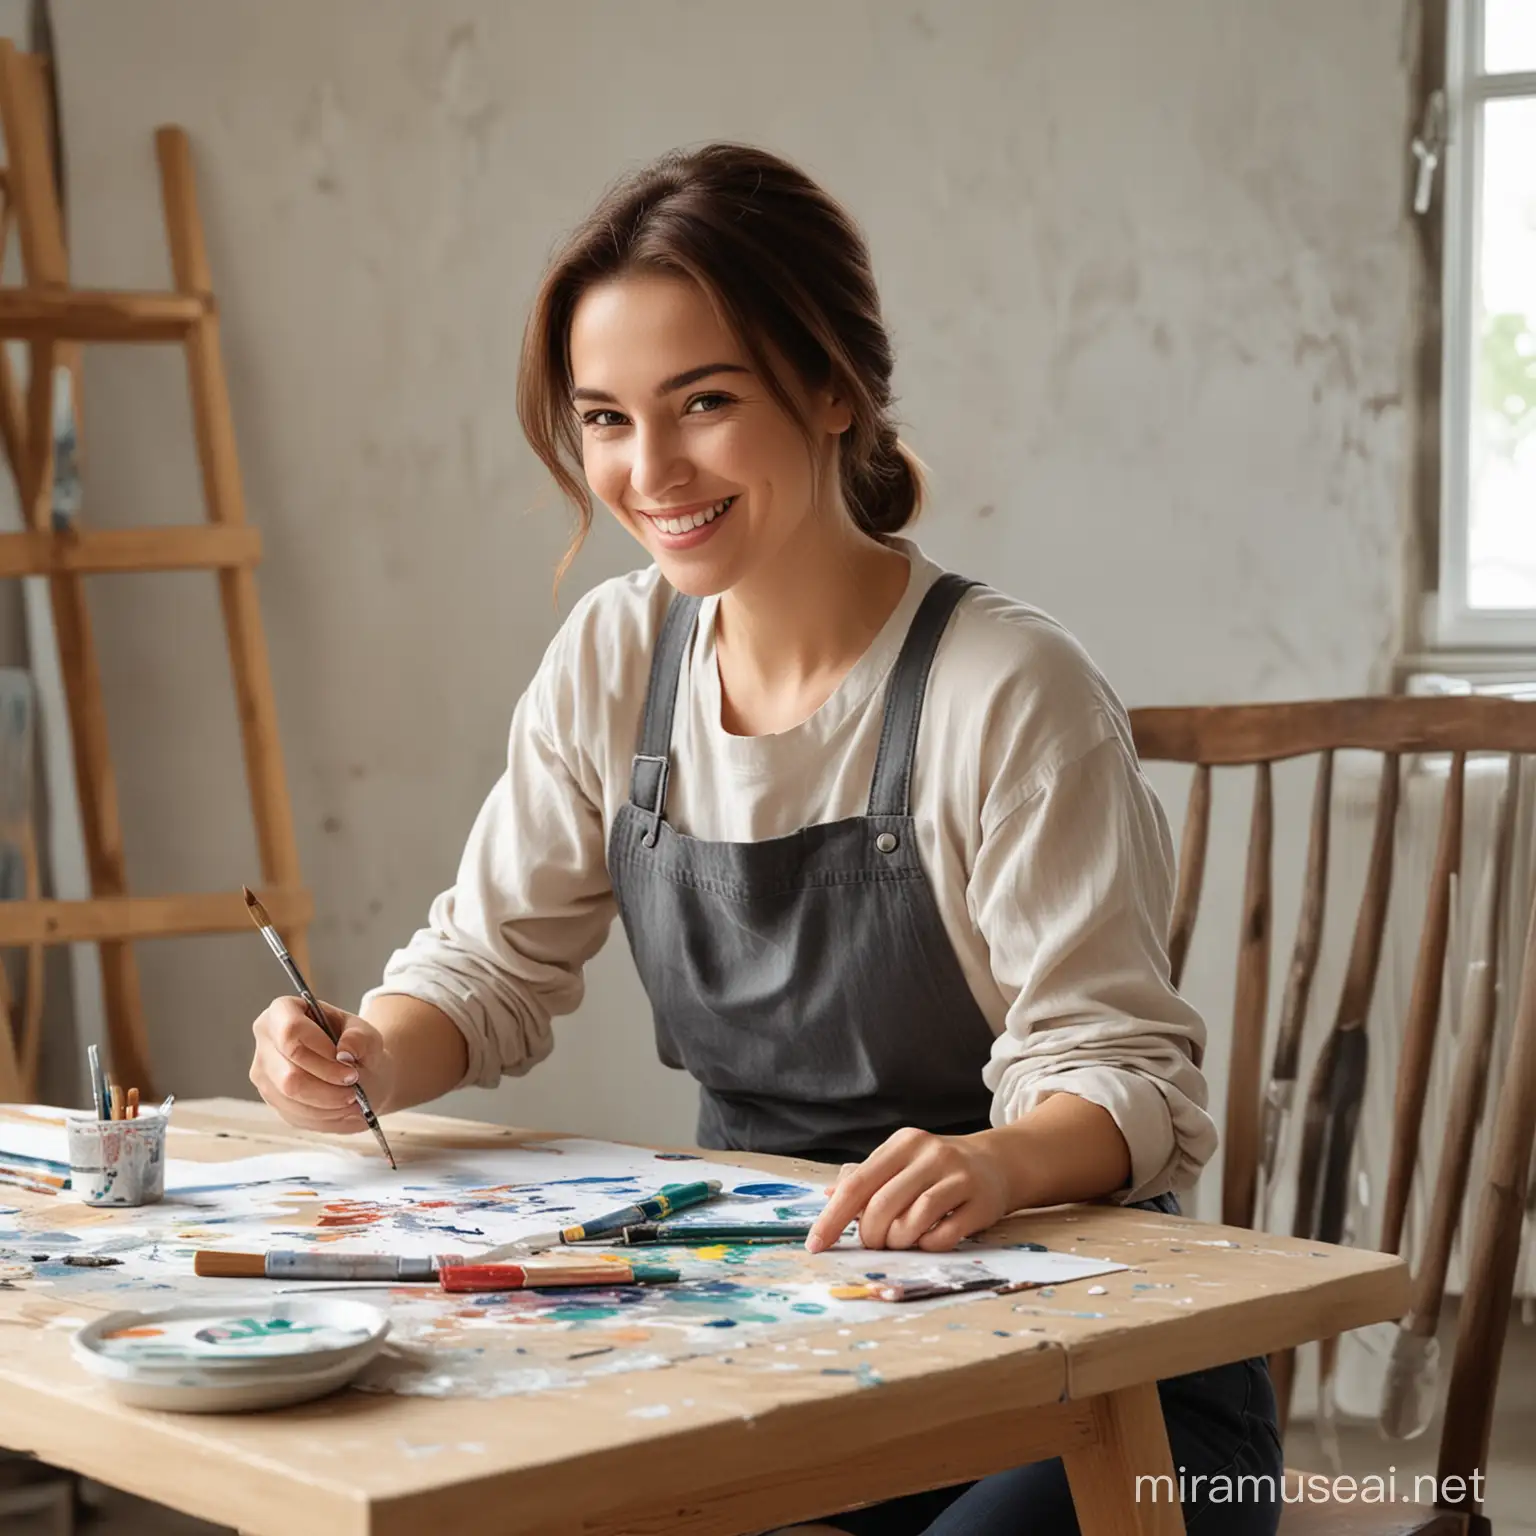 Женщина-художница сидит за столом с кисточкой в руке и улыбается. 